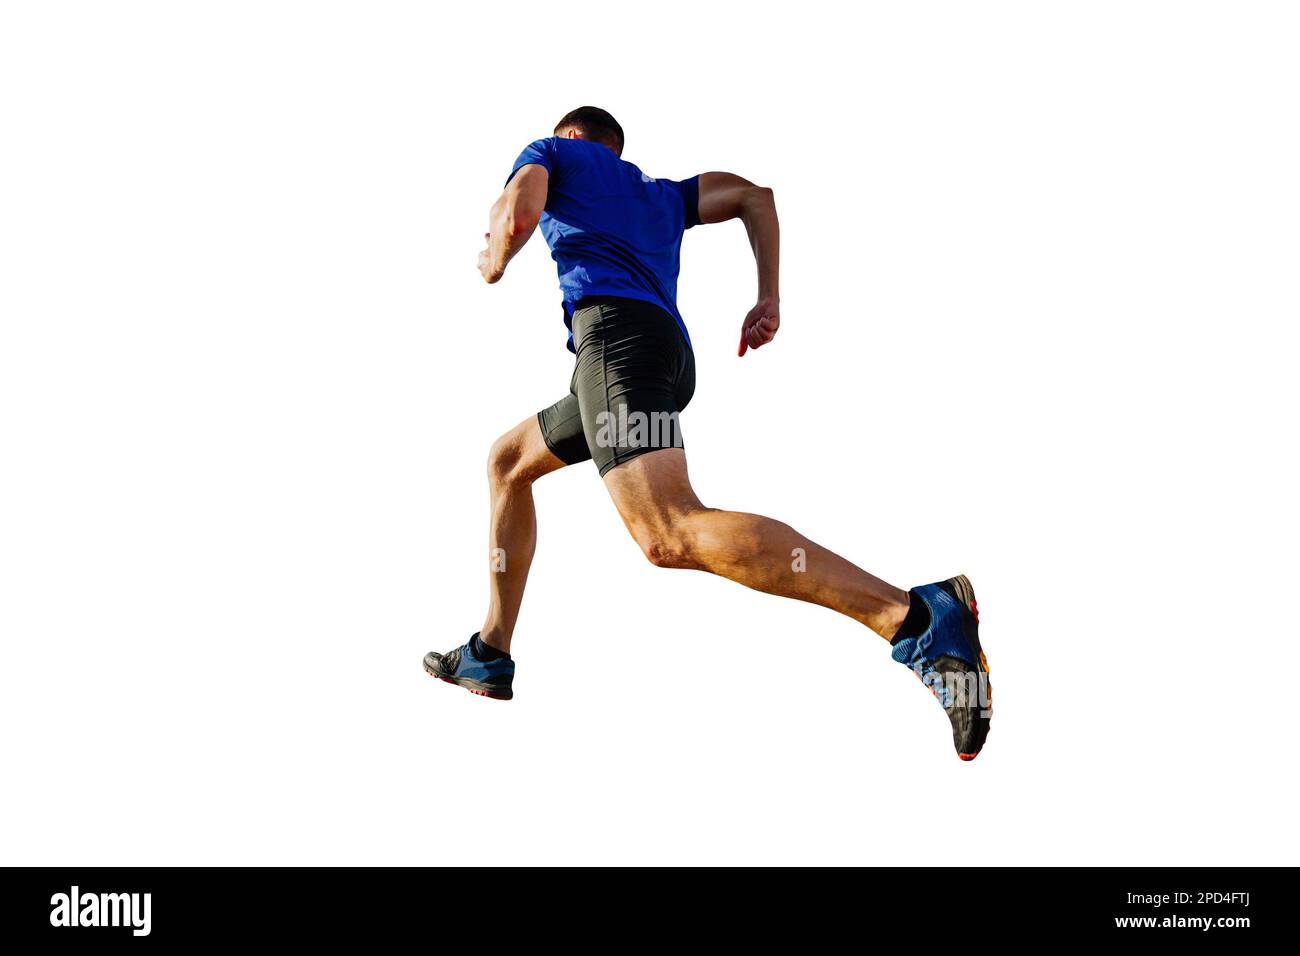 corredor atleta en camisa azul y medias negras corriendo montaña, silueta cortada sobre fondo blanco, foto deportiva Foto de stock